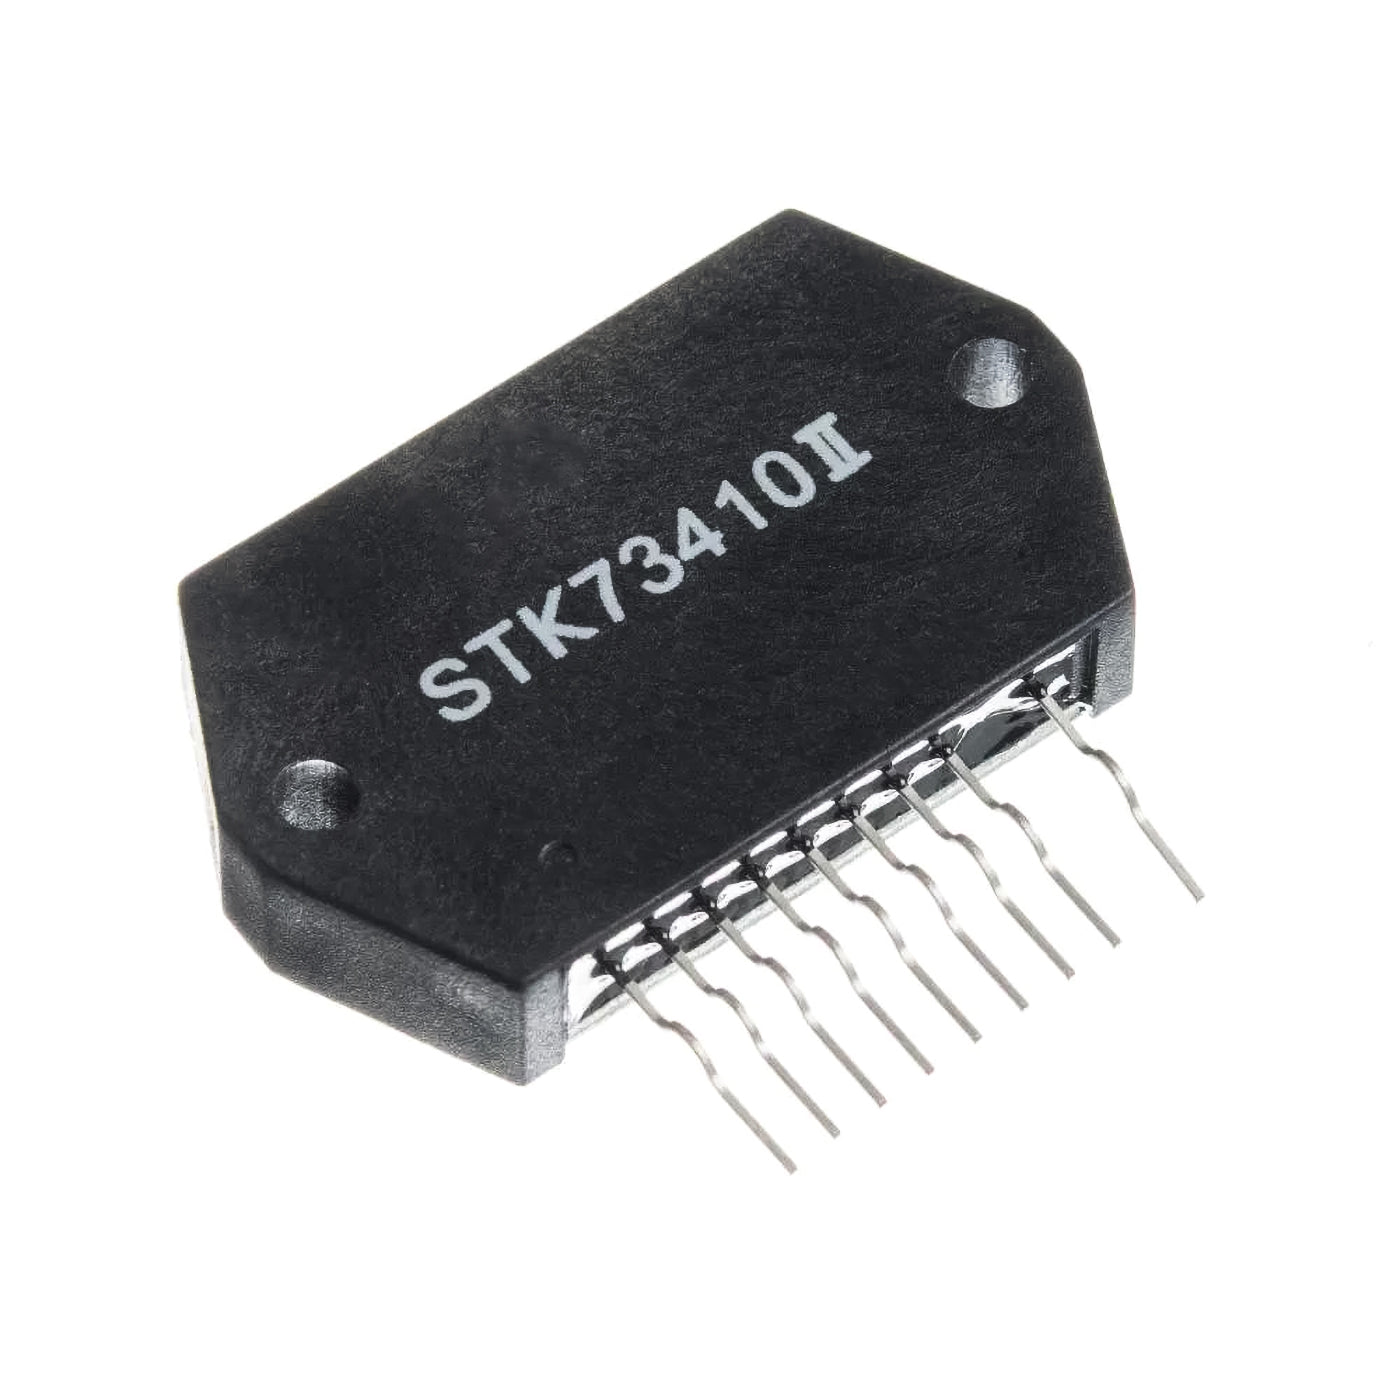 STK73410II componente elettronico, circuito integrato, transistor, 9 contatti